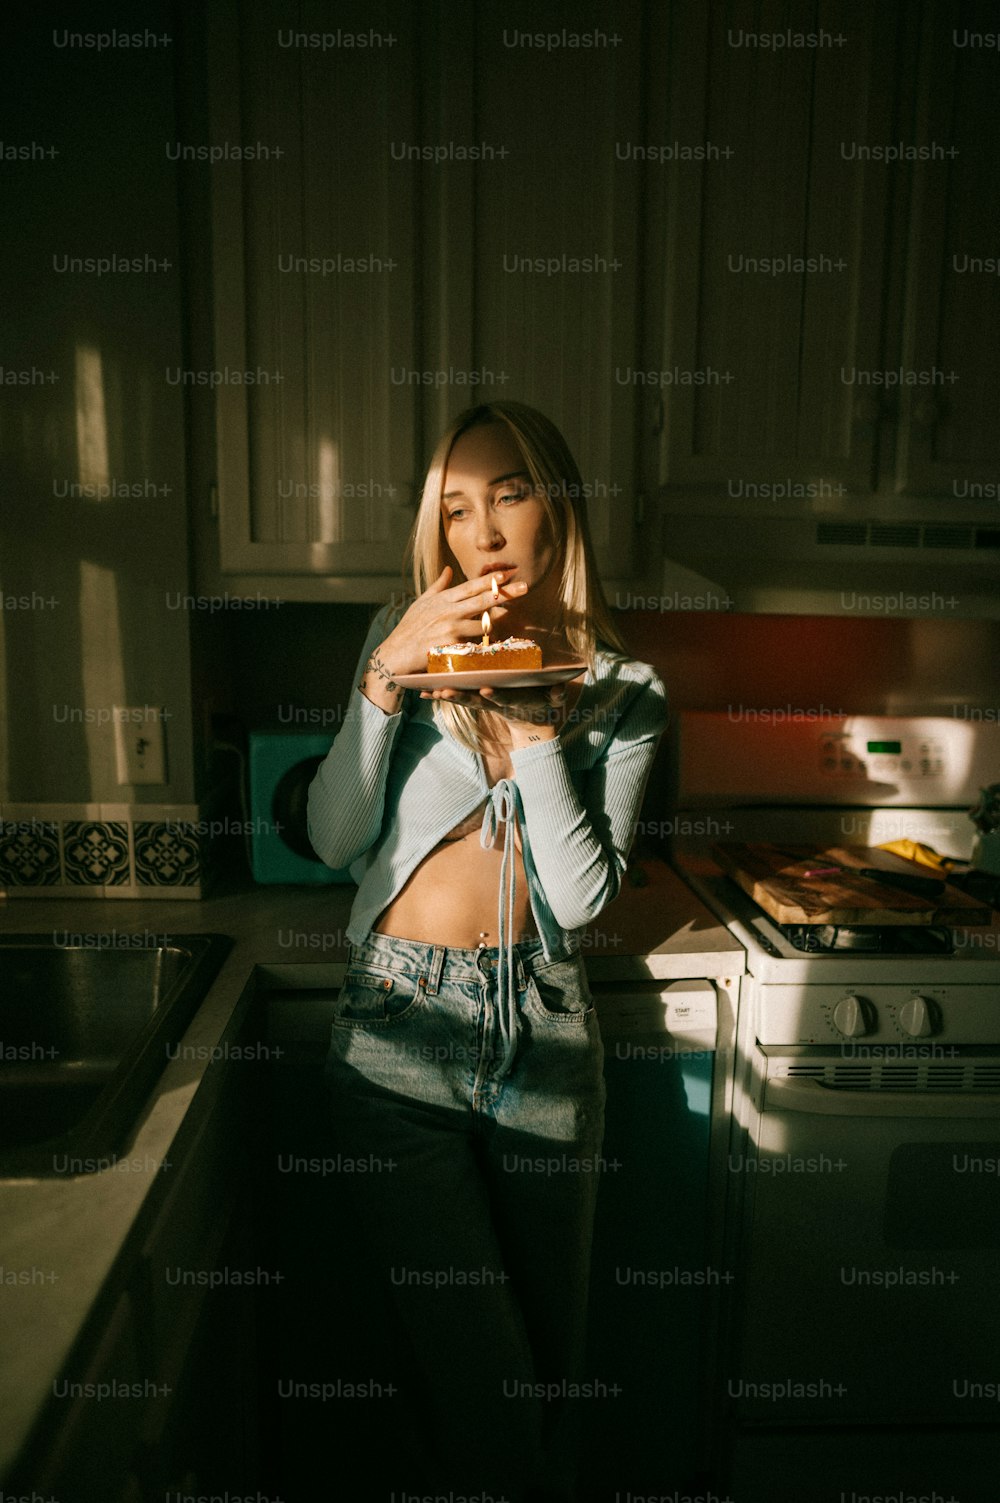 Eine Frau steht in einer Küche mit einer Pizza in der Hand